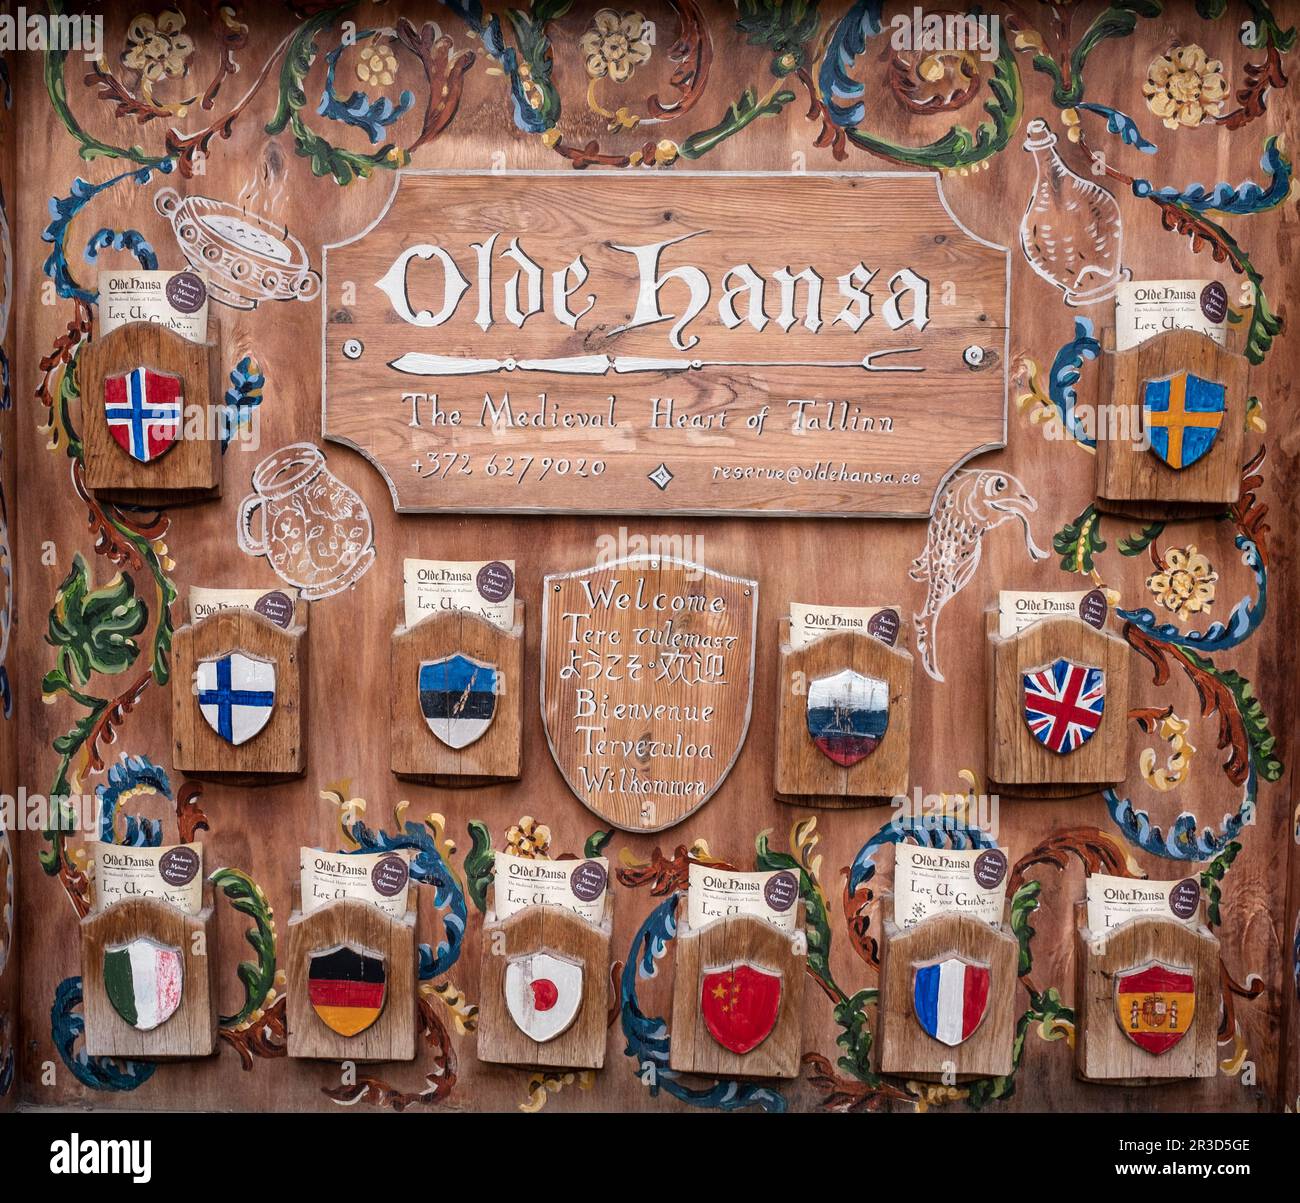 Olde Hansa das mittelalterliche Restaurant serviert Gerichte in verschiedenen Sprachen, Altstadt von Tallinn, Estland Stockfoto